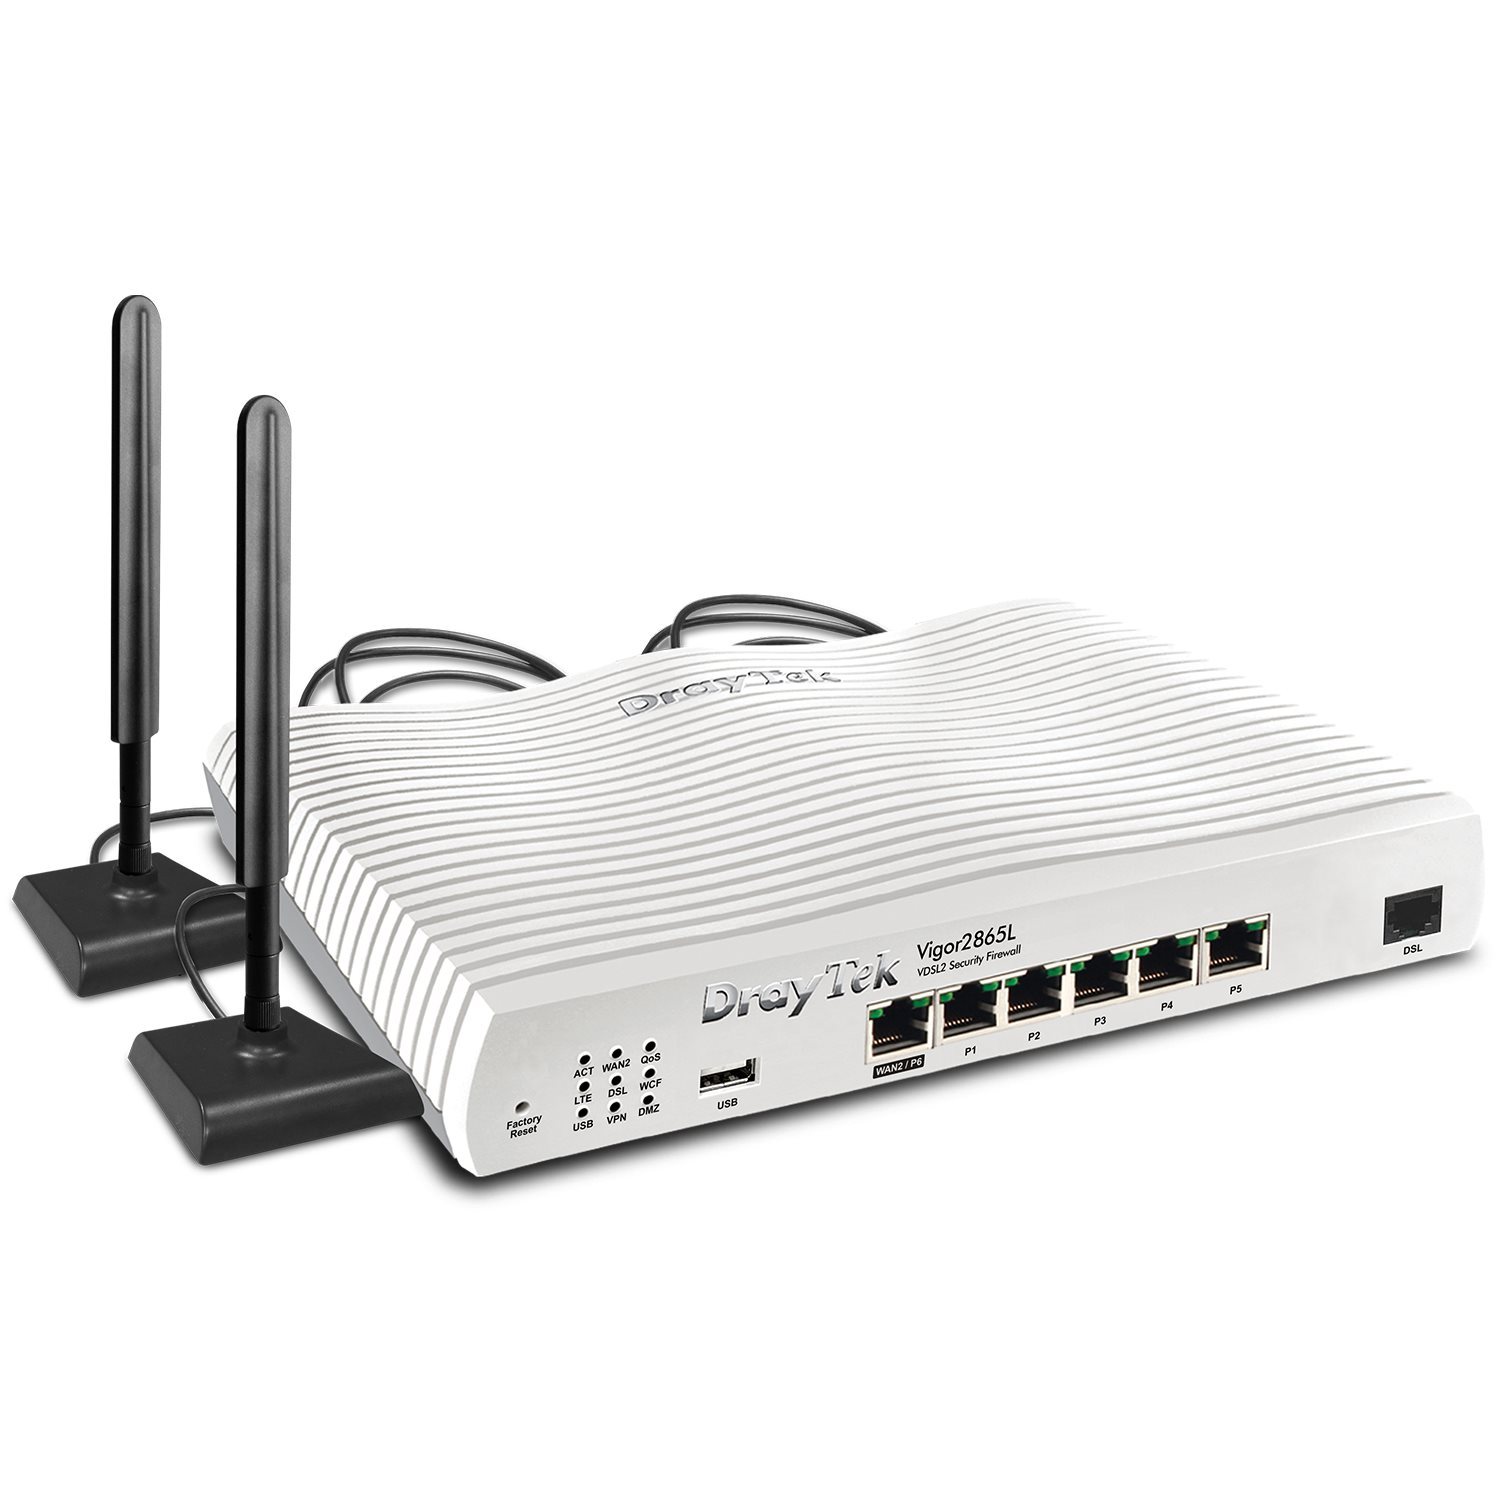  Routeurs Pro Modem routeur multiwan LTE Giga 32 VPN VIGOR2865L